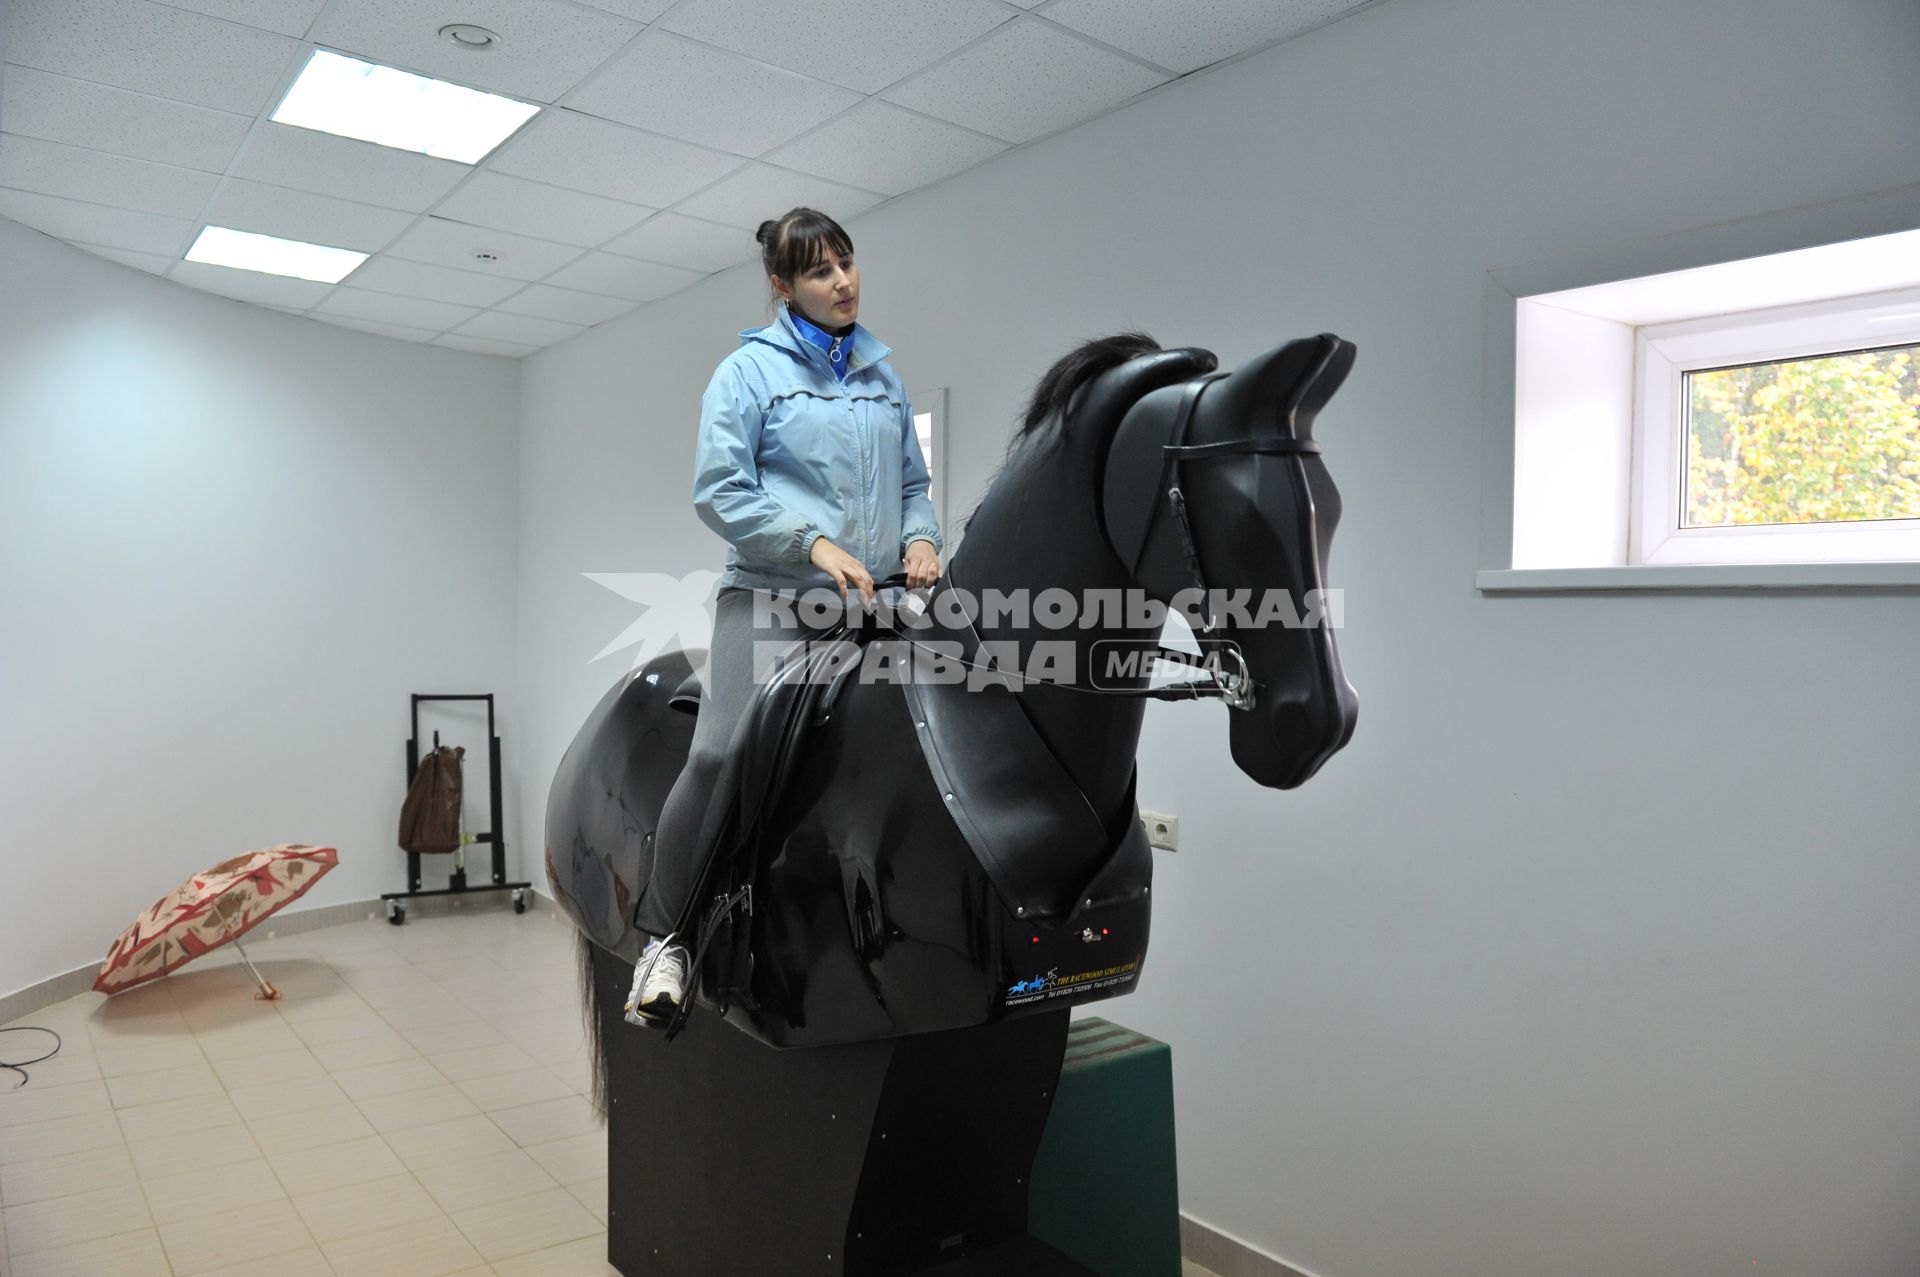 Национальный конный парк `Русь`. На снимке: девушка на тренажере.